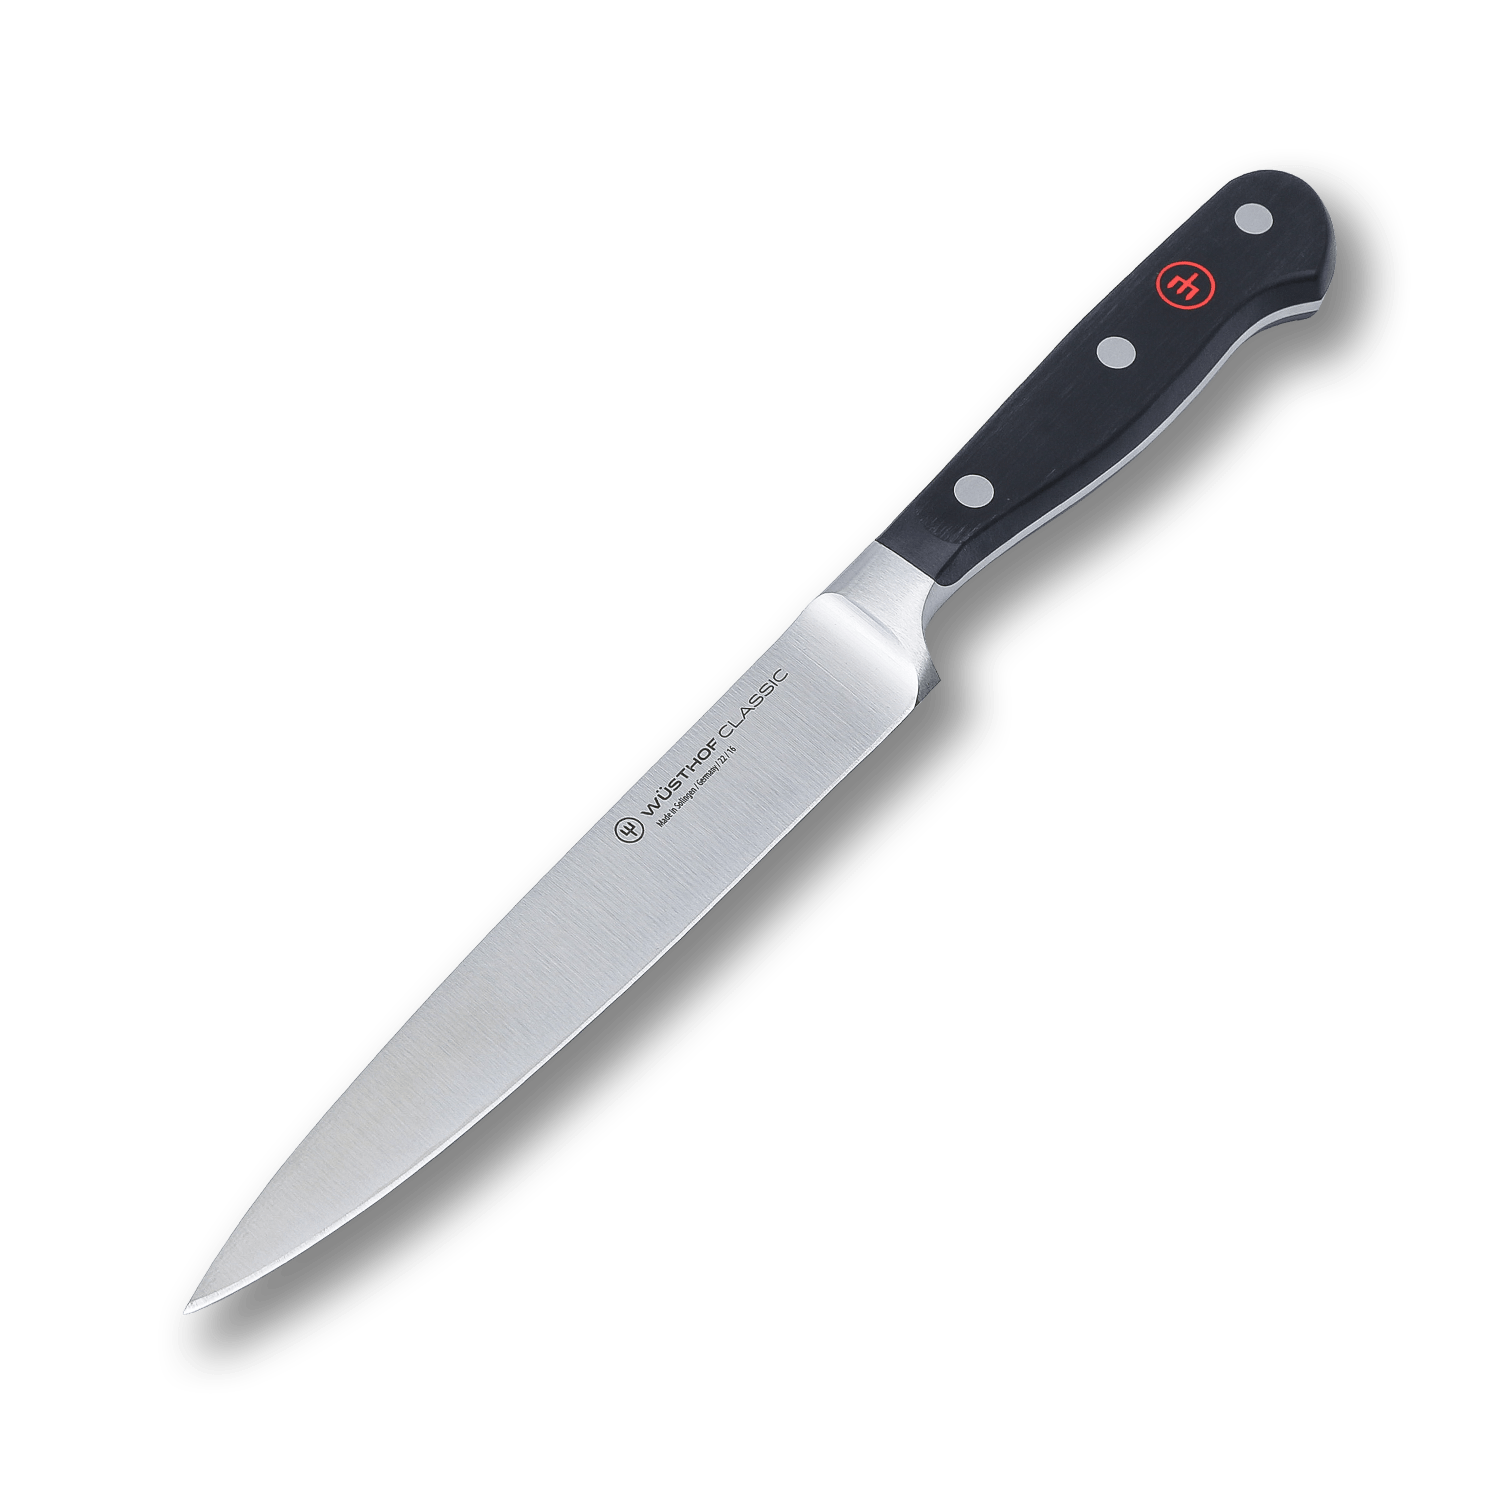 Универсальный кухонный нож Wuesthof 16 см, кованая молибден-ванадиевая нержавеющая сталь X50CrMoV15, 1040100716